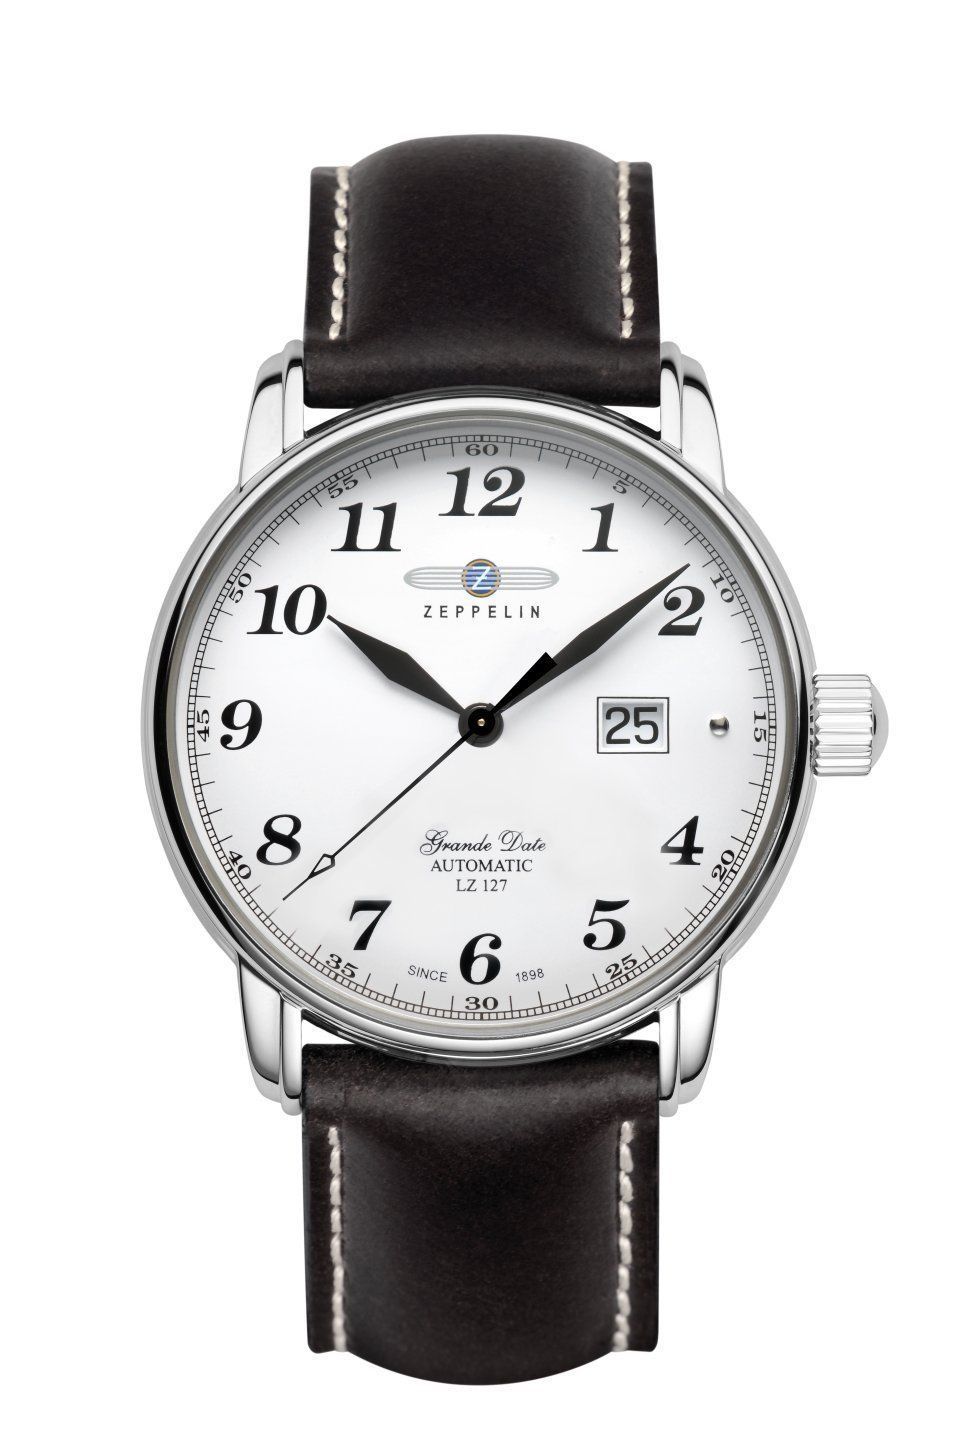 Les montres Zeppelin les plus onéreuses vendues sur eBay ! 